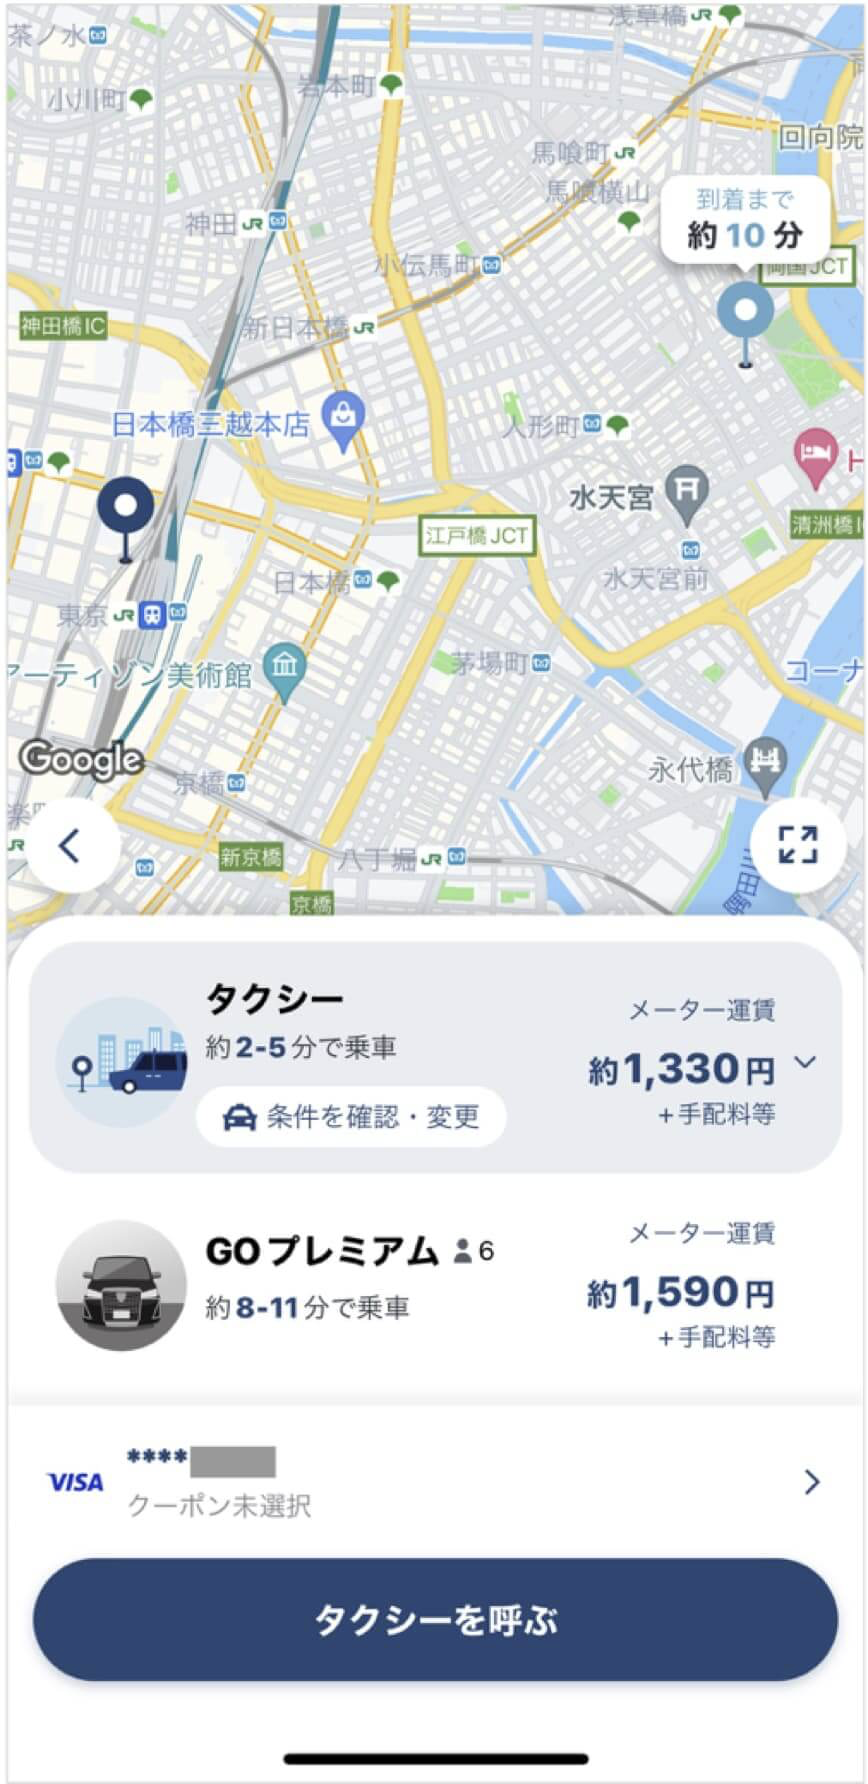 東京駅から明治座までのタクシー料金・所要時間まとめ